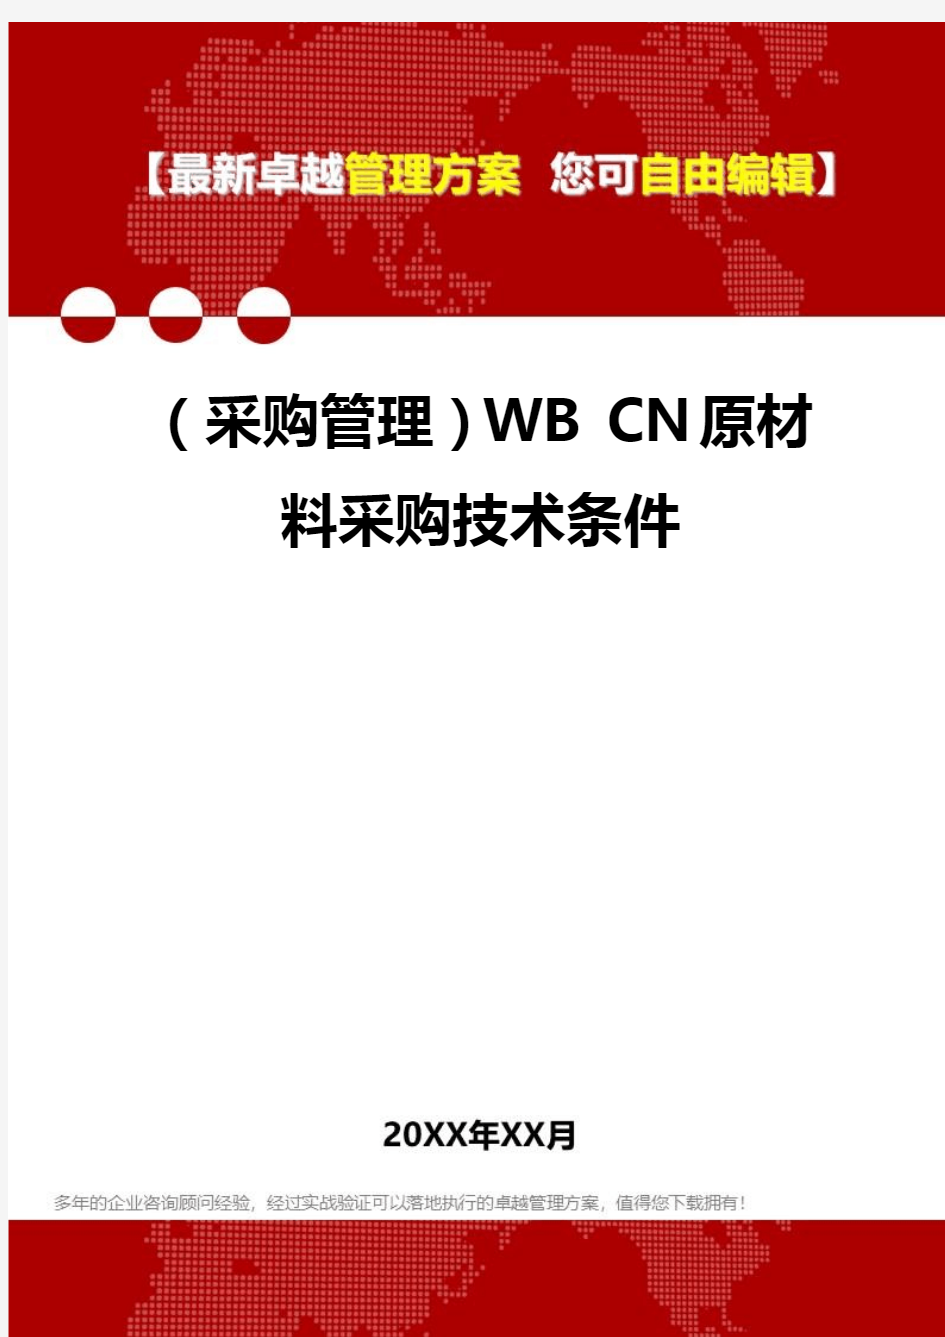 2020年(采购管理)WB CN原材料采购技术条件